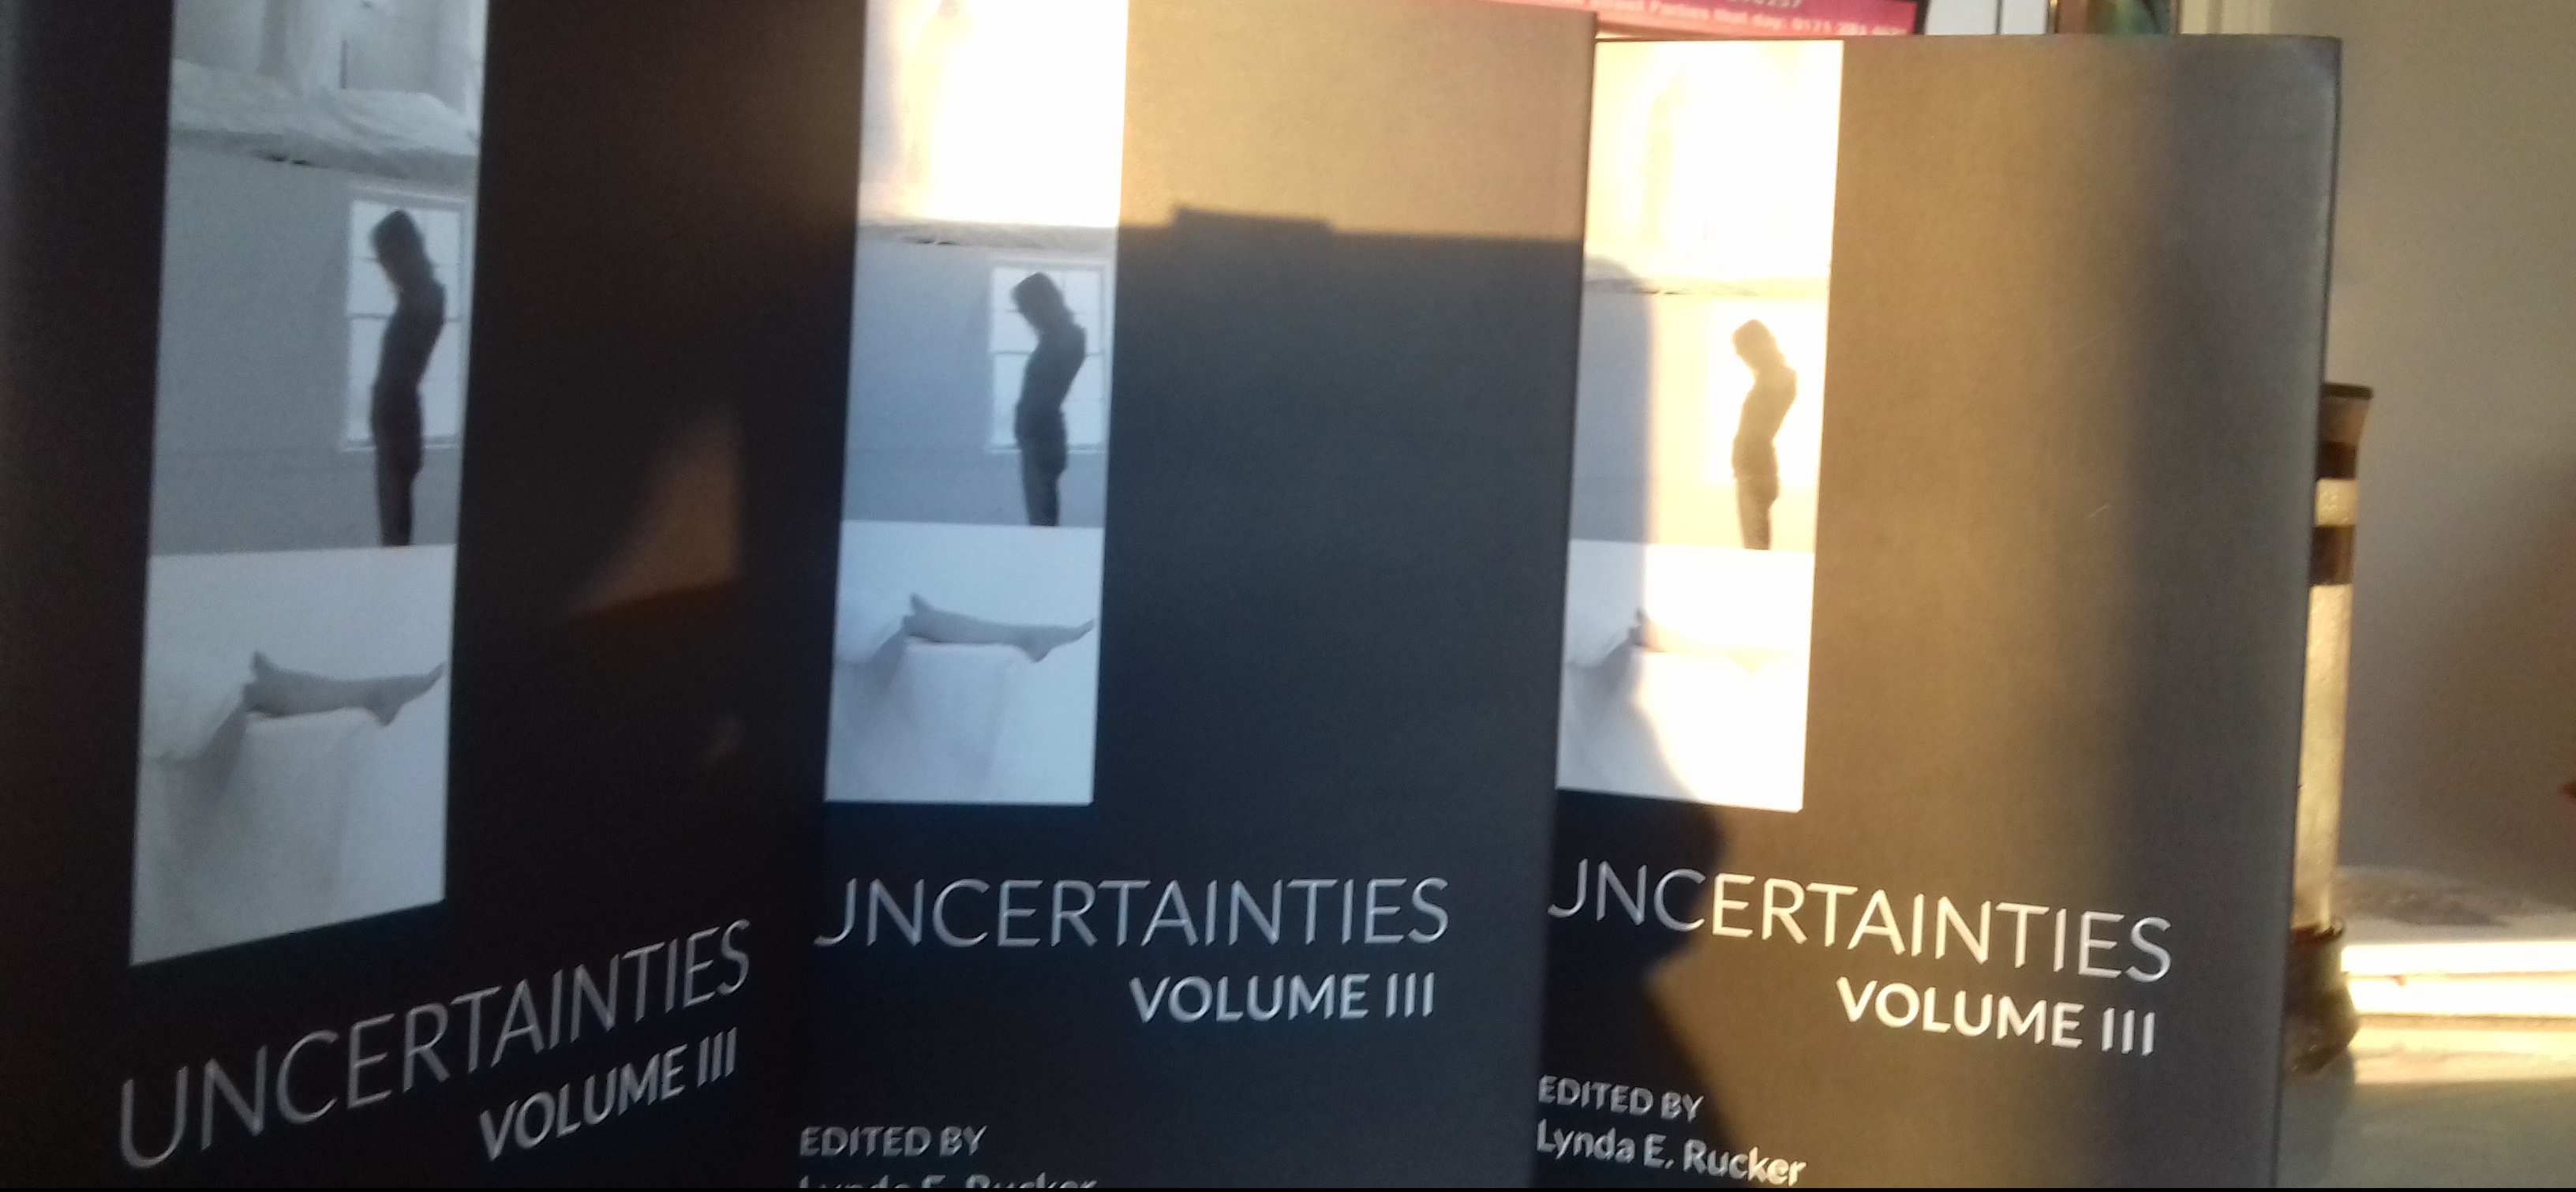 Uncertainties Volume III spread